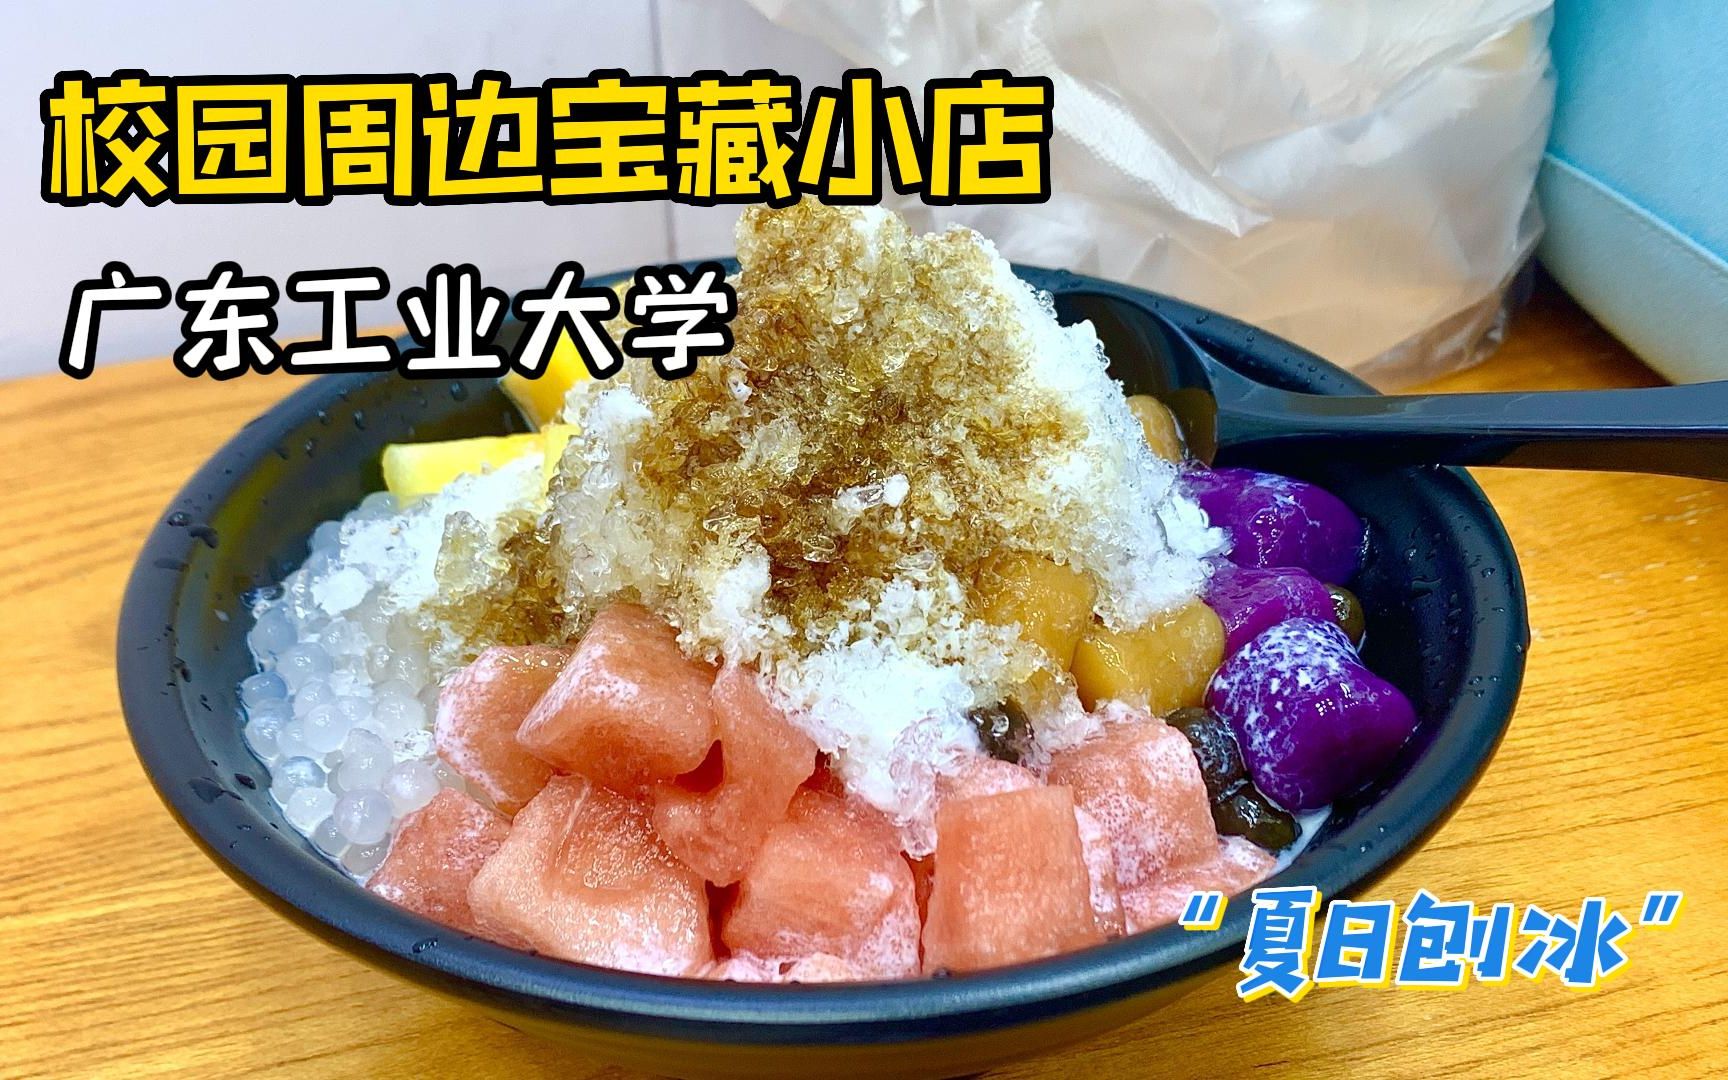 广东工业大学旁的仙豆糕和刨冰，没想到在广州的十月份我还在吃冰吧~